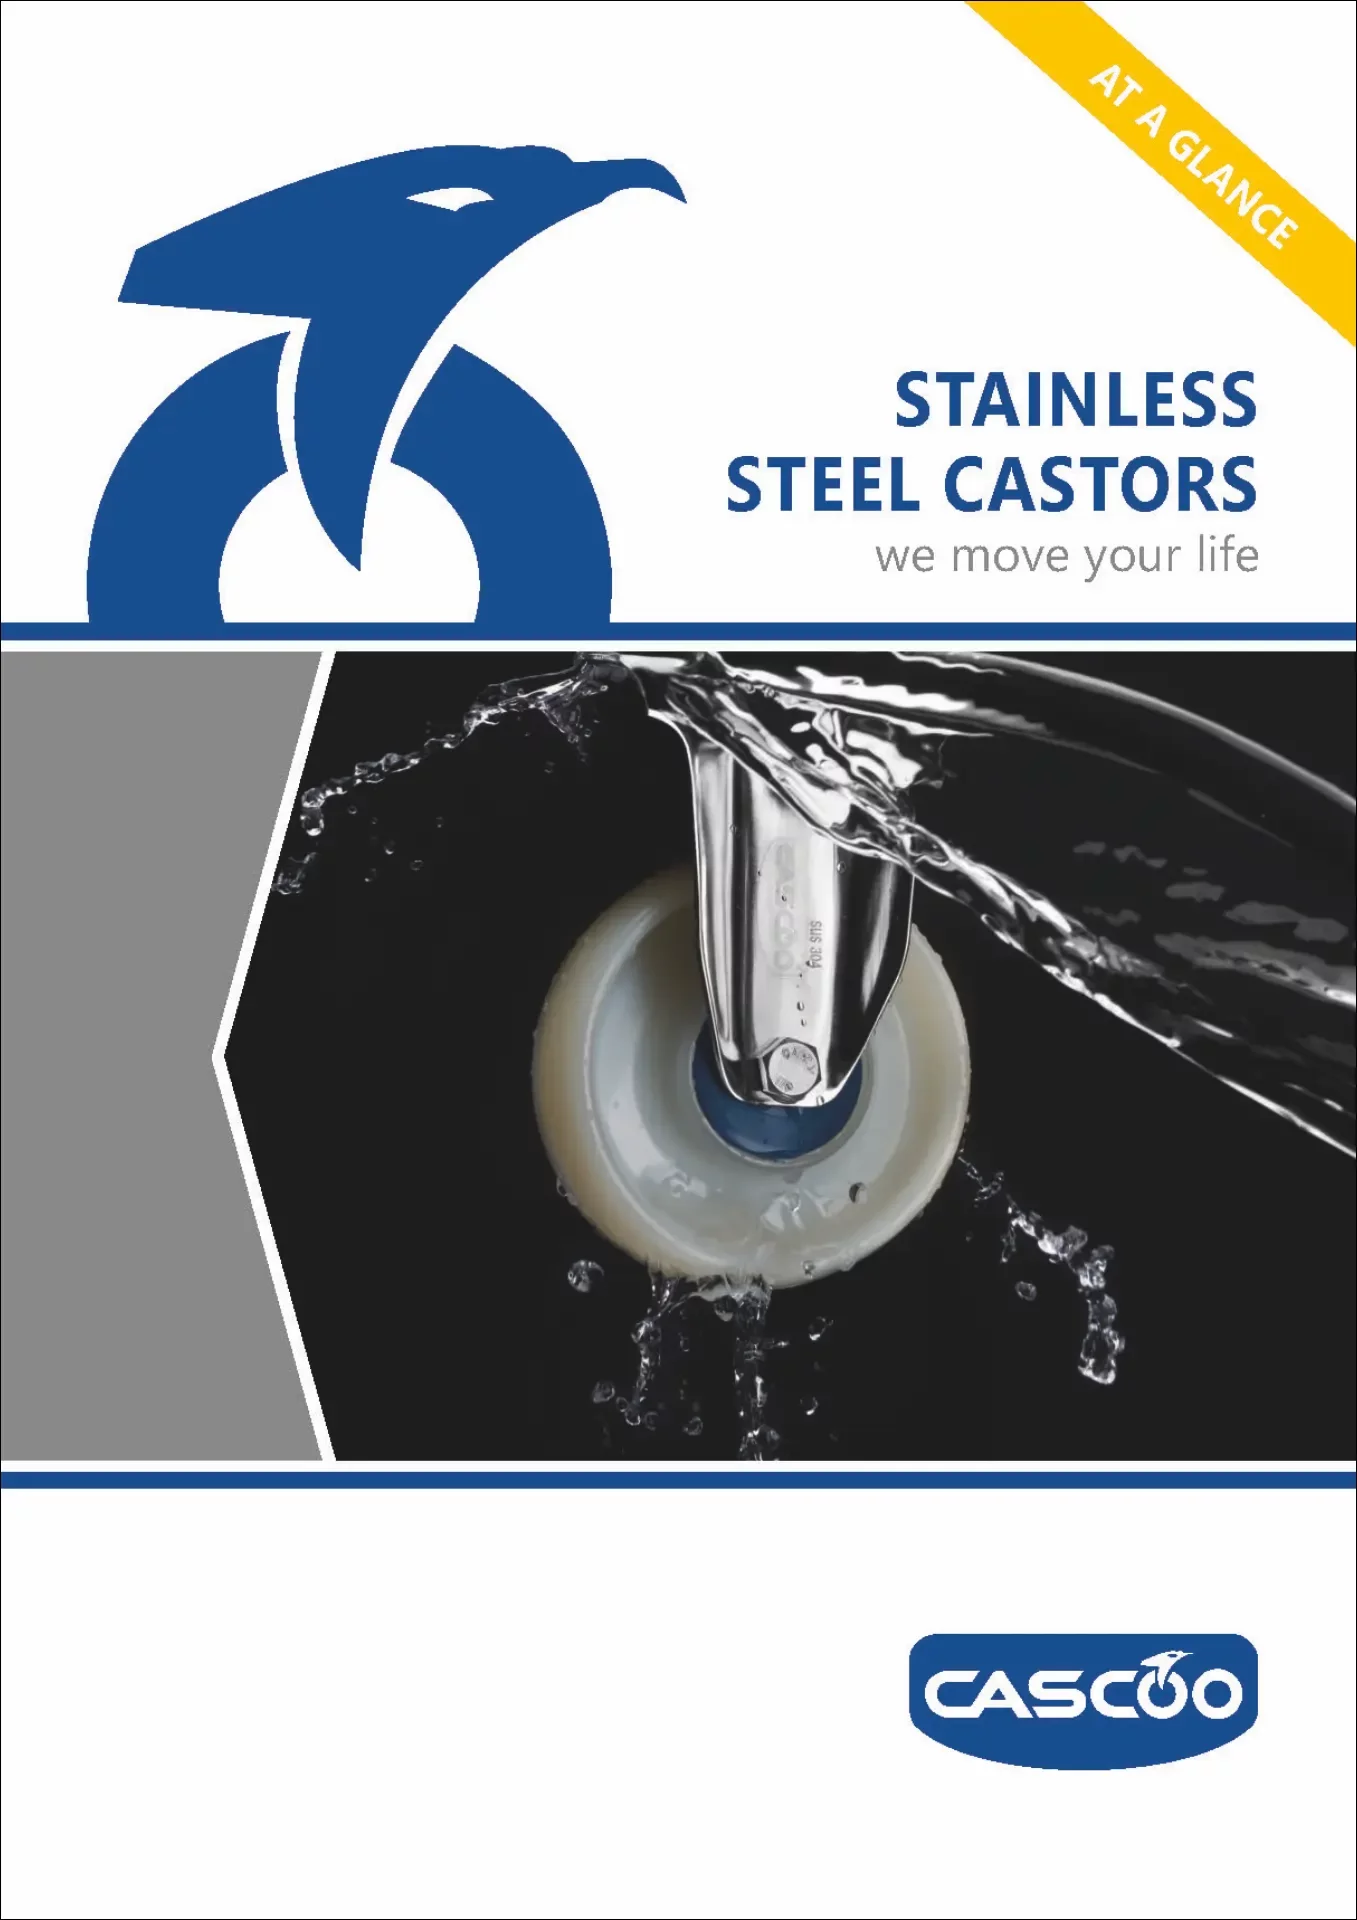 CASCOO EN Stainless Steel